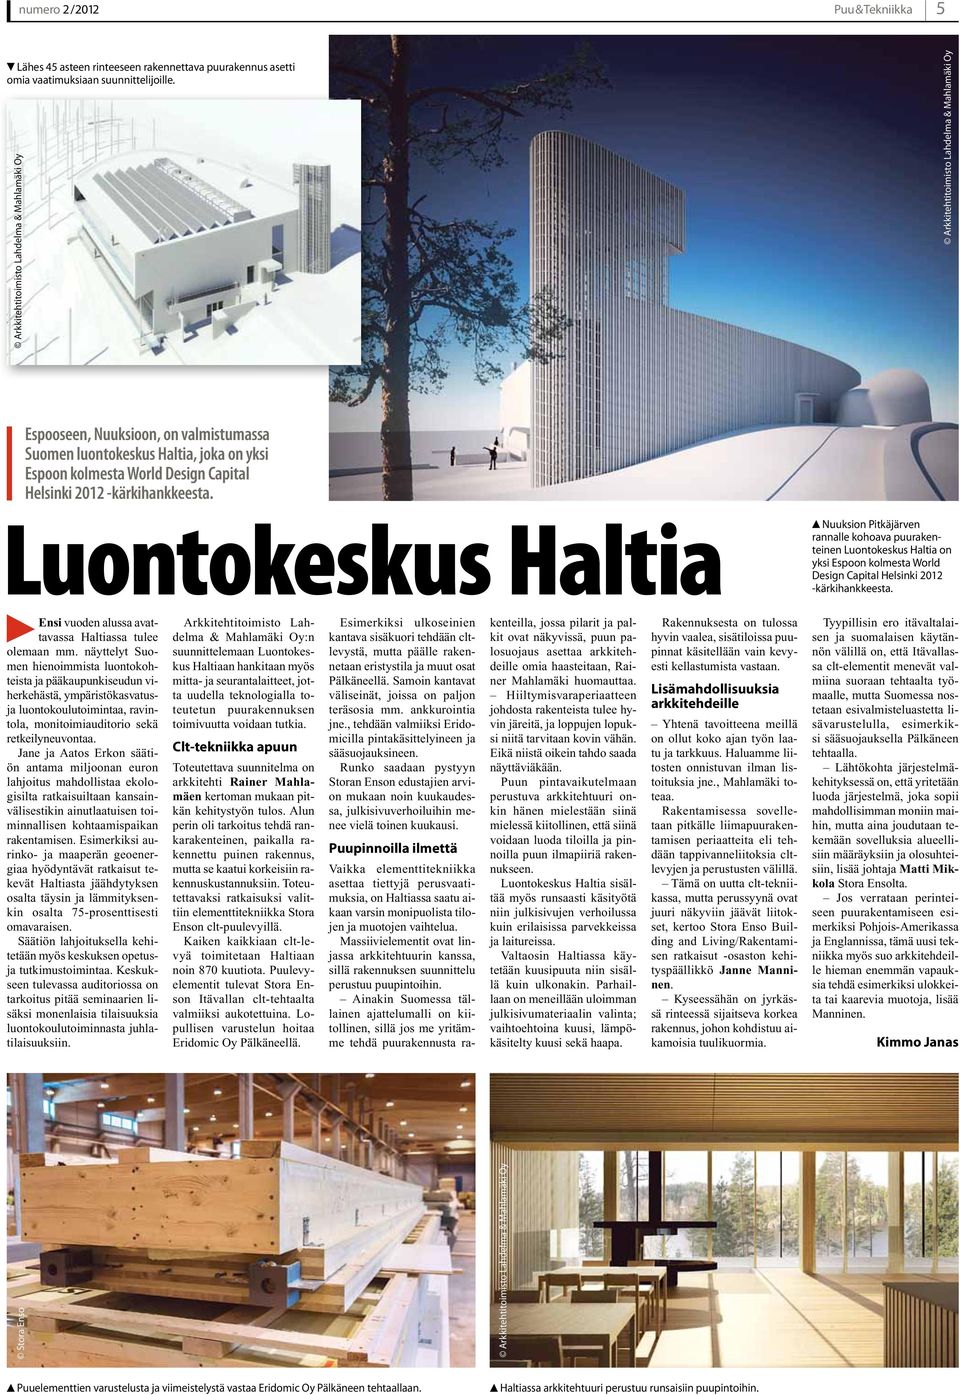 Luontokeskus Haltia Nuuksion Pitkäjärven rannalle kohoava puurakenteinen Luontokeskus Haltia on yksi Espoon kolmesta World Design Capital Helsinki 2012 -kärkihankkeesta.